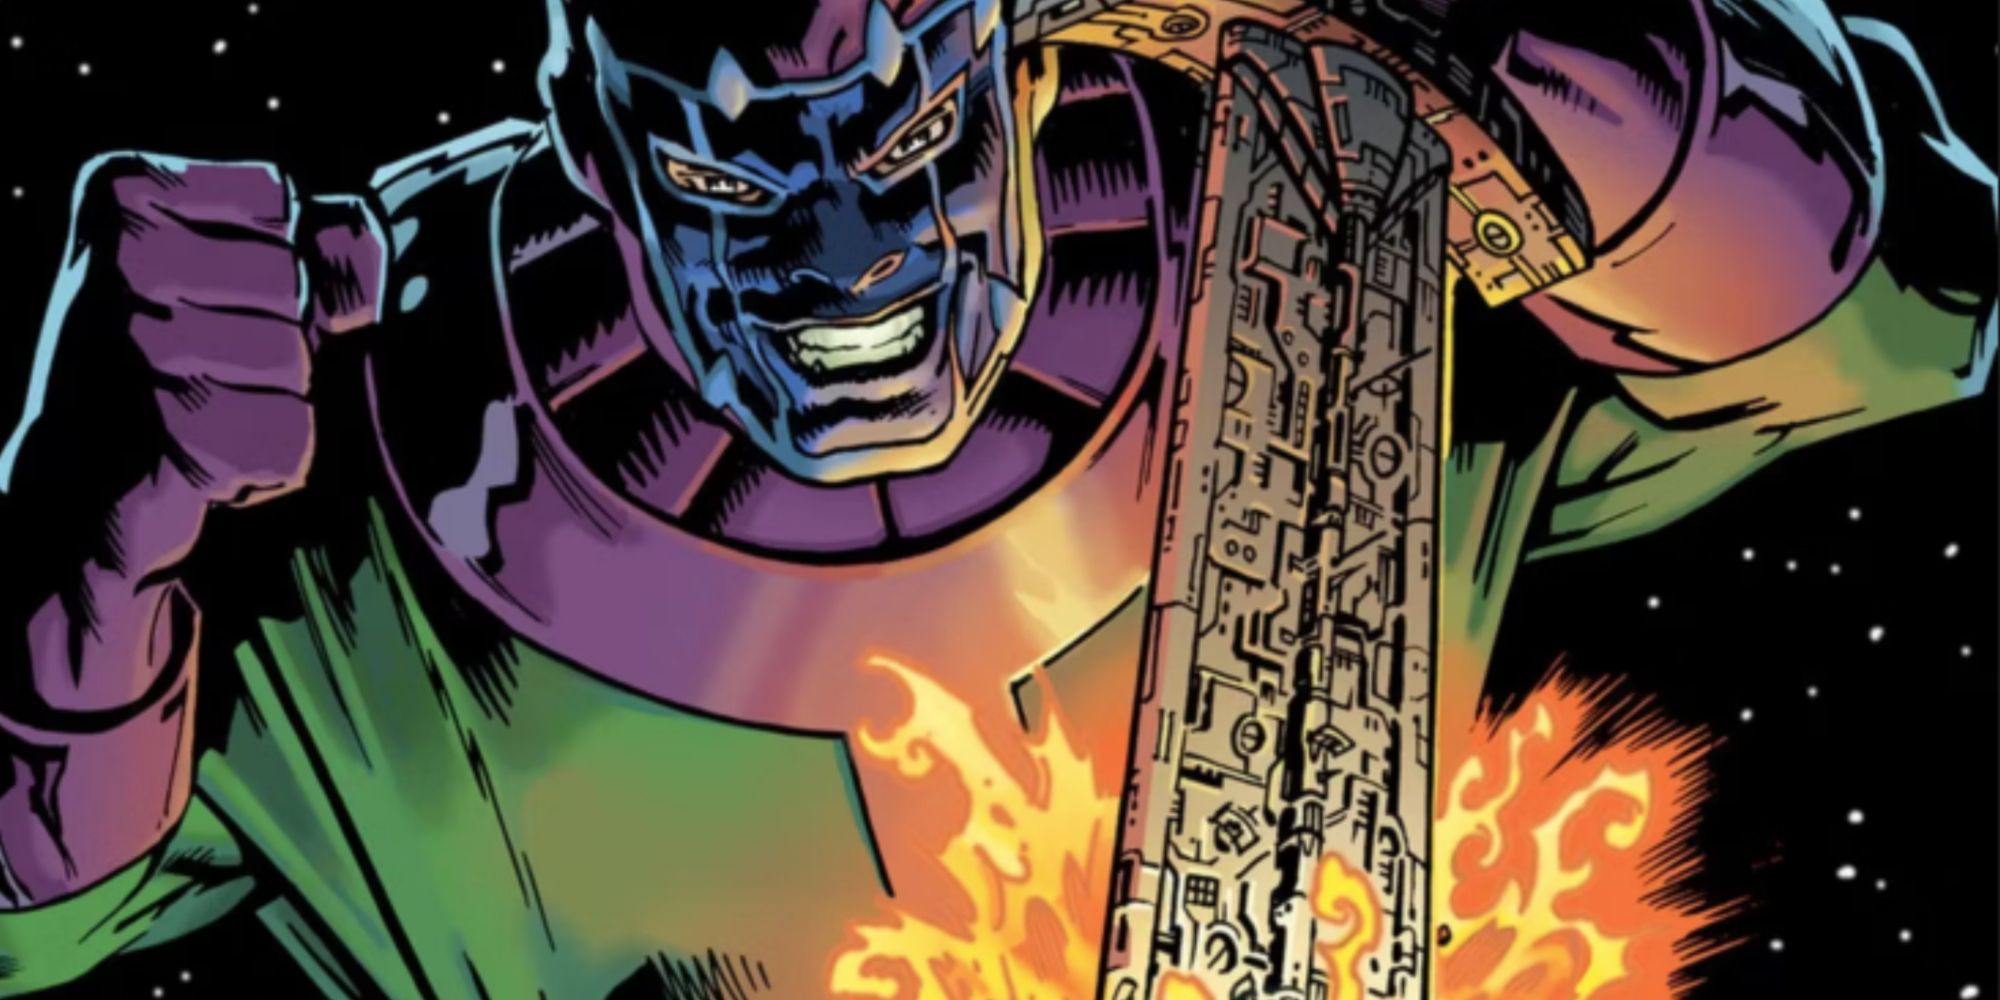 Kang The Conqueror mergulha sua espada no mundo da Marvel Comics.